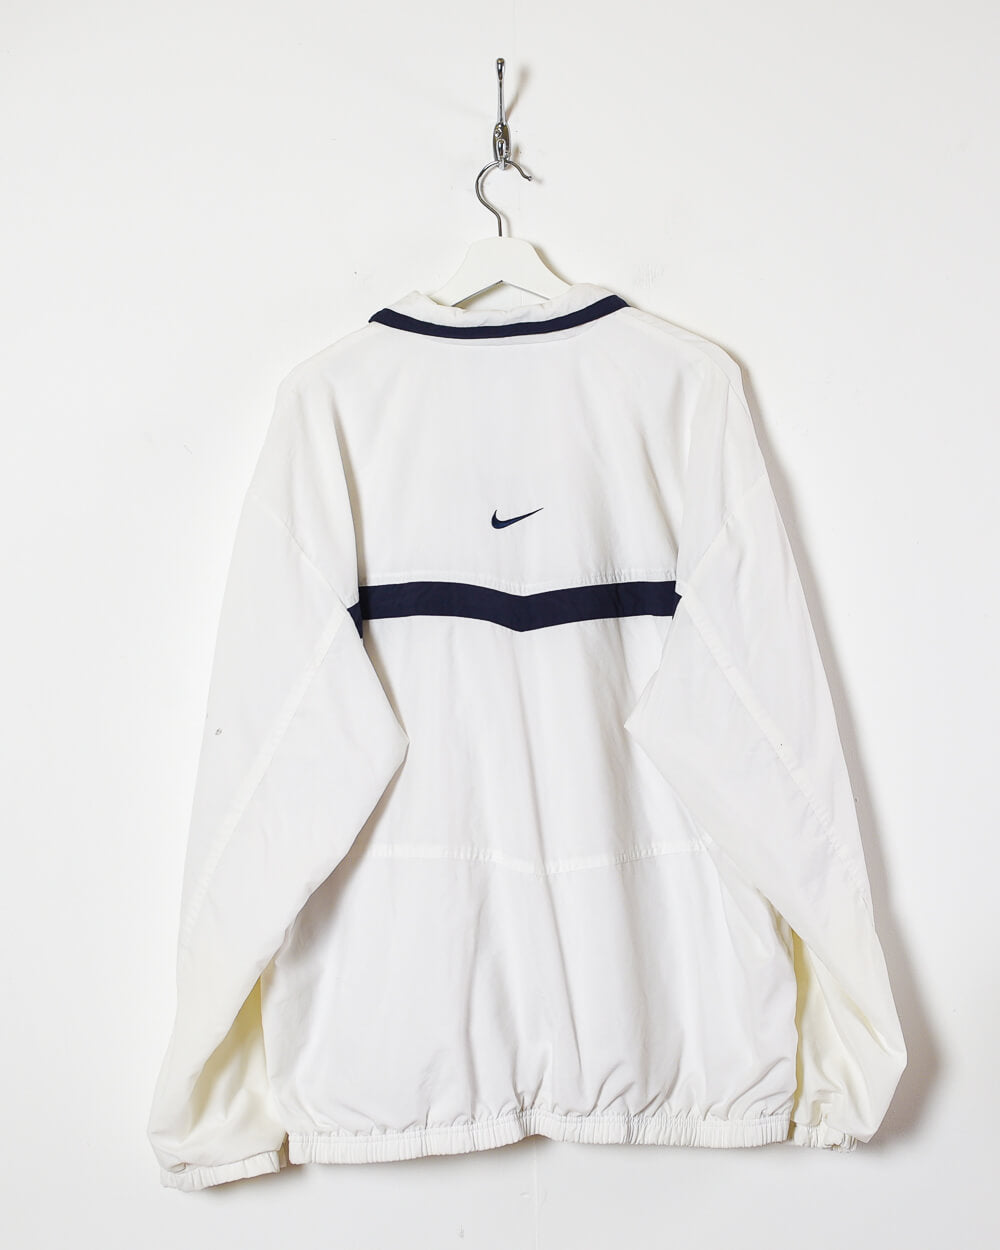 White Nike Windbreaker Jacket - X-Large